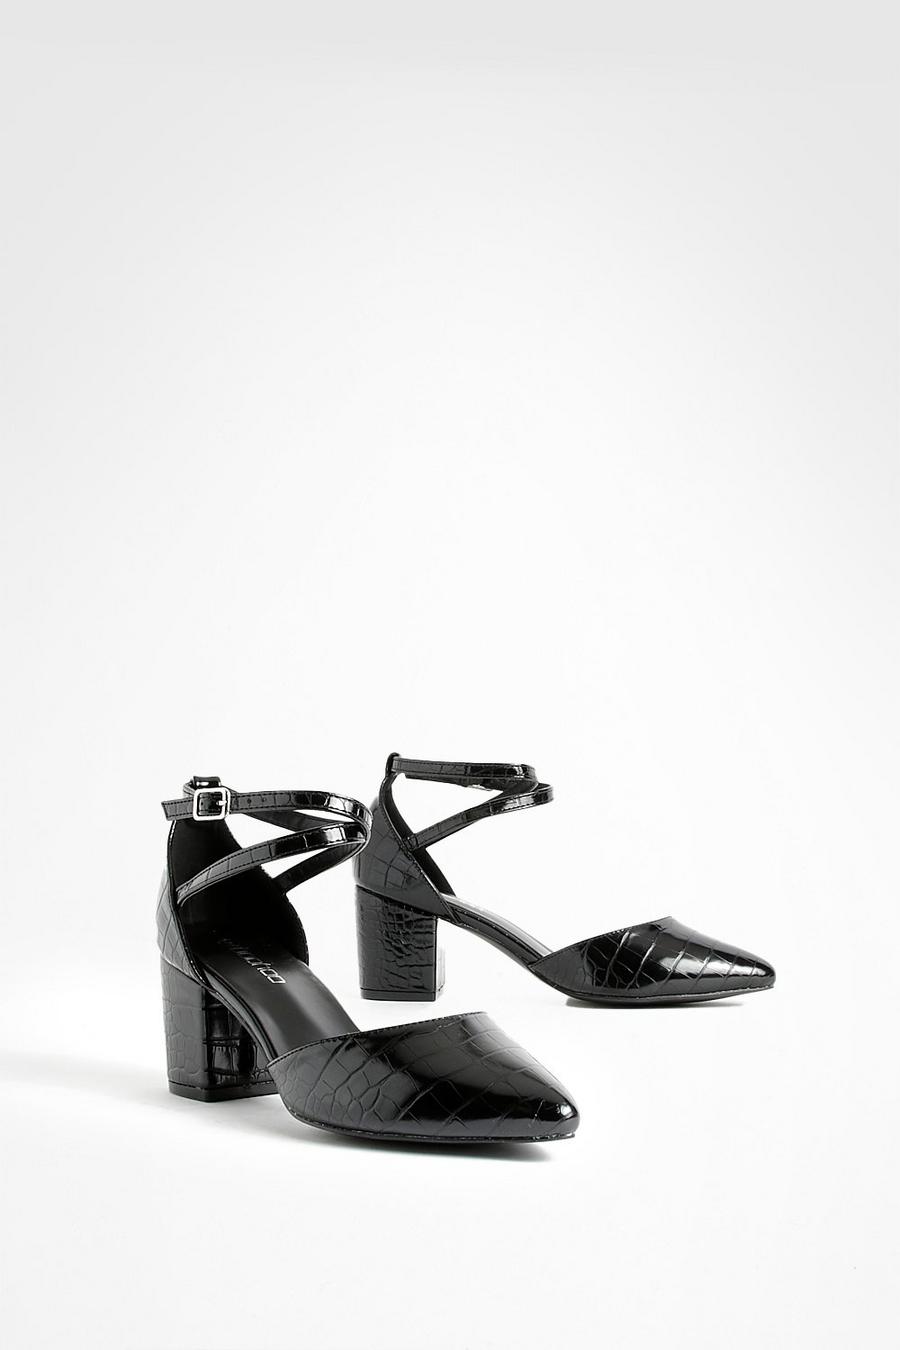 שחור black נעליים שטוחות עם עקבים וקצה מחודד לרגל רחבה